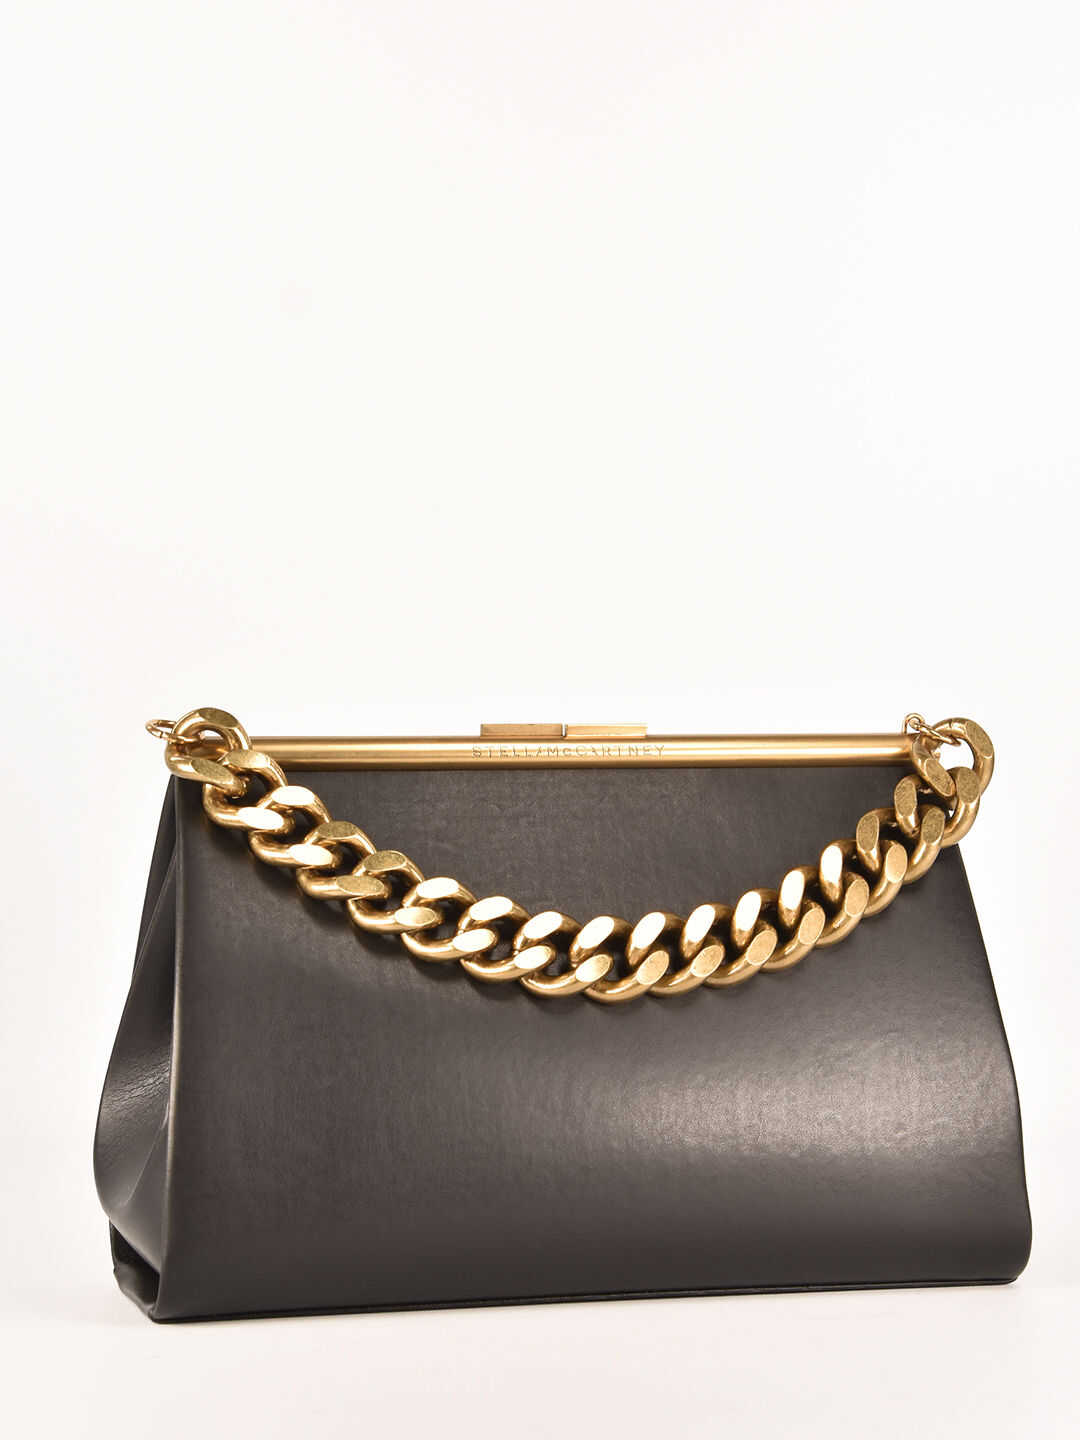 Stella McCartney Chain Medium Bag 700210 W8779 Black